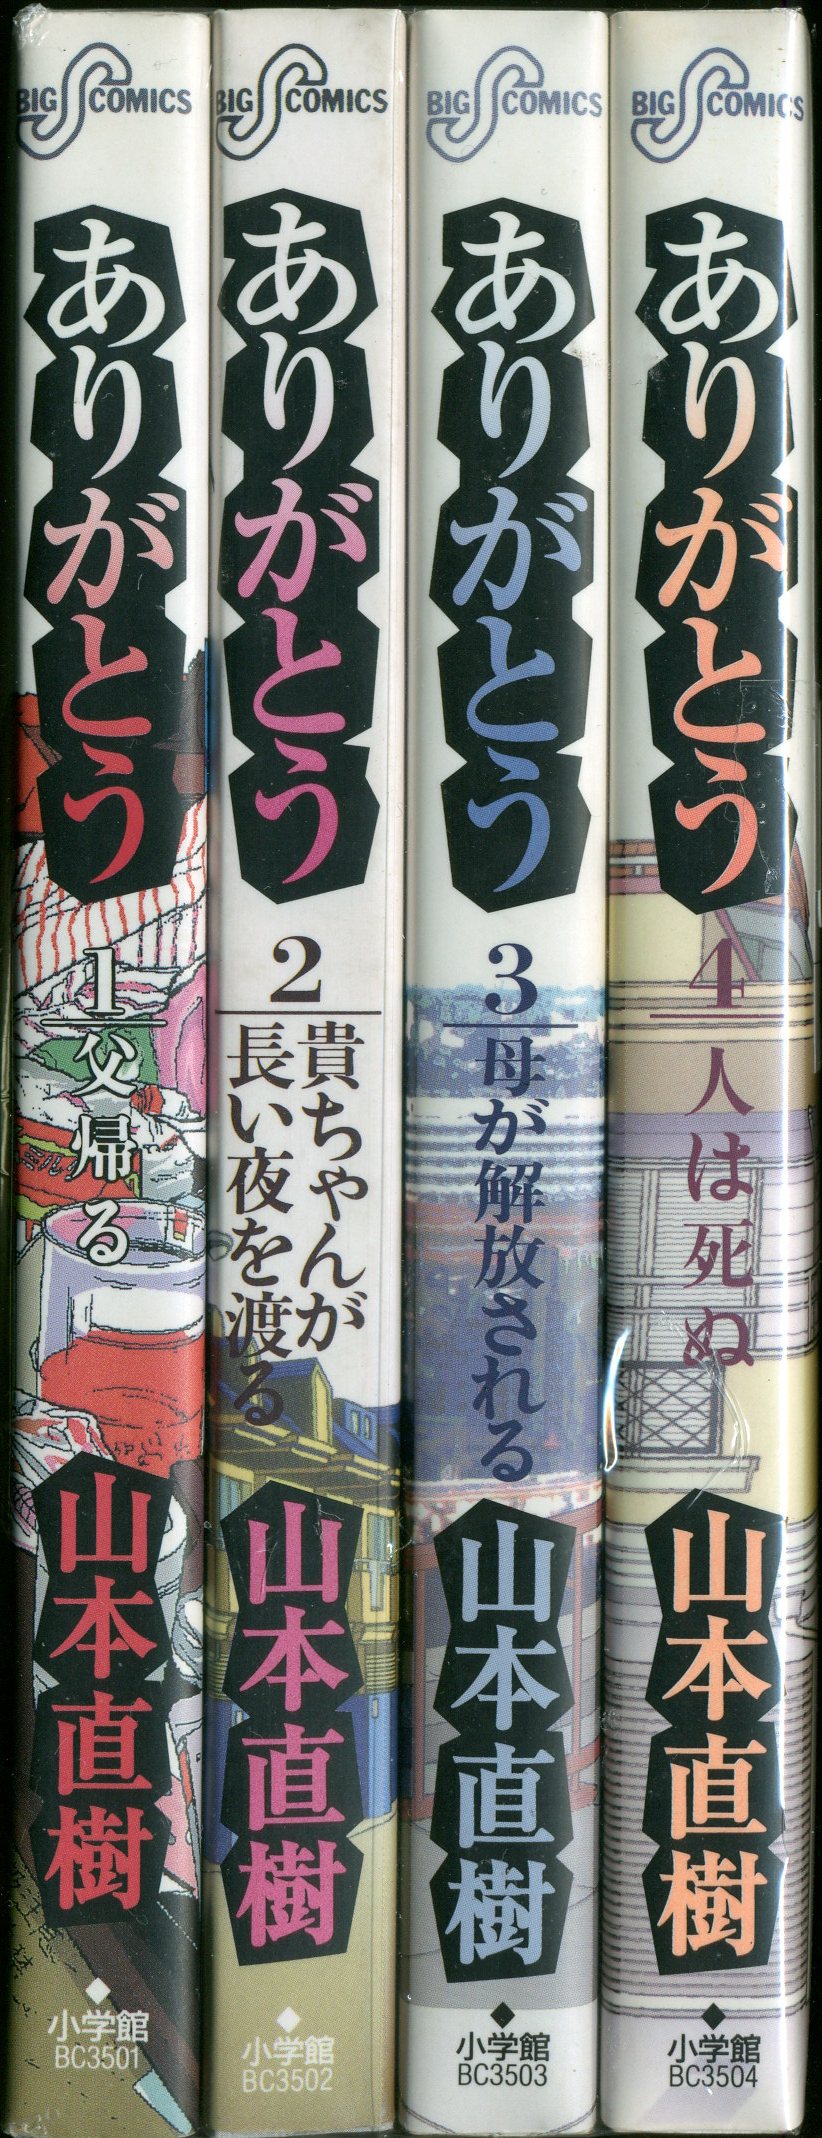 山本直樹 コレクション デジタルムービーコミック CD-ROM - マンガ 